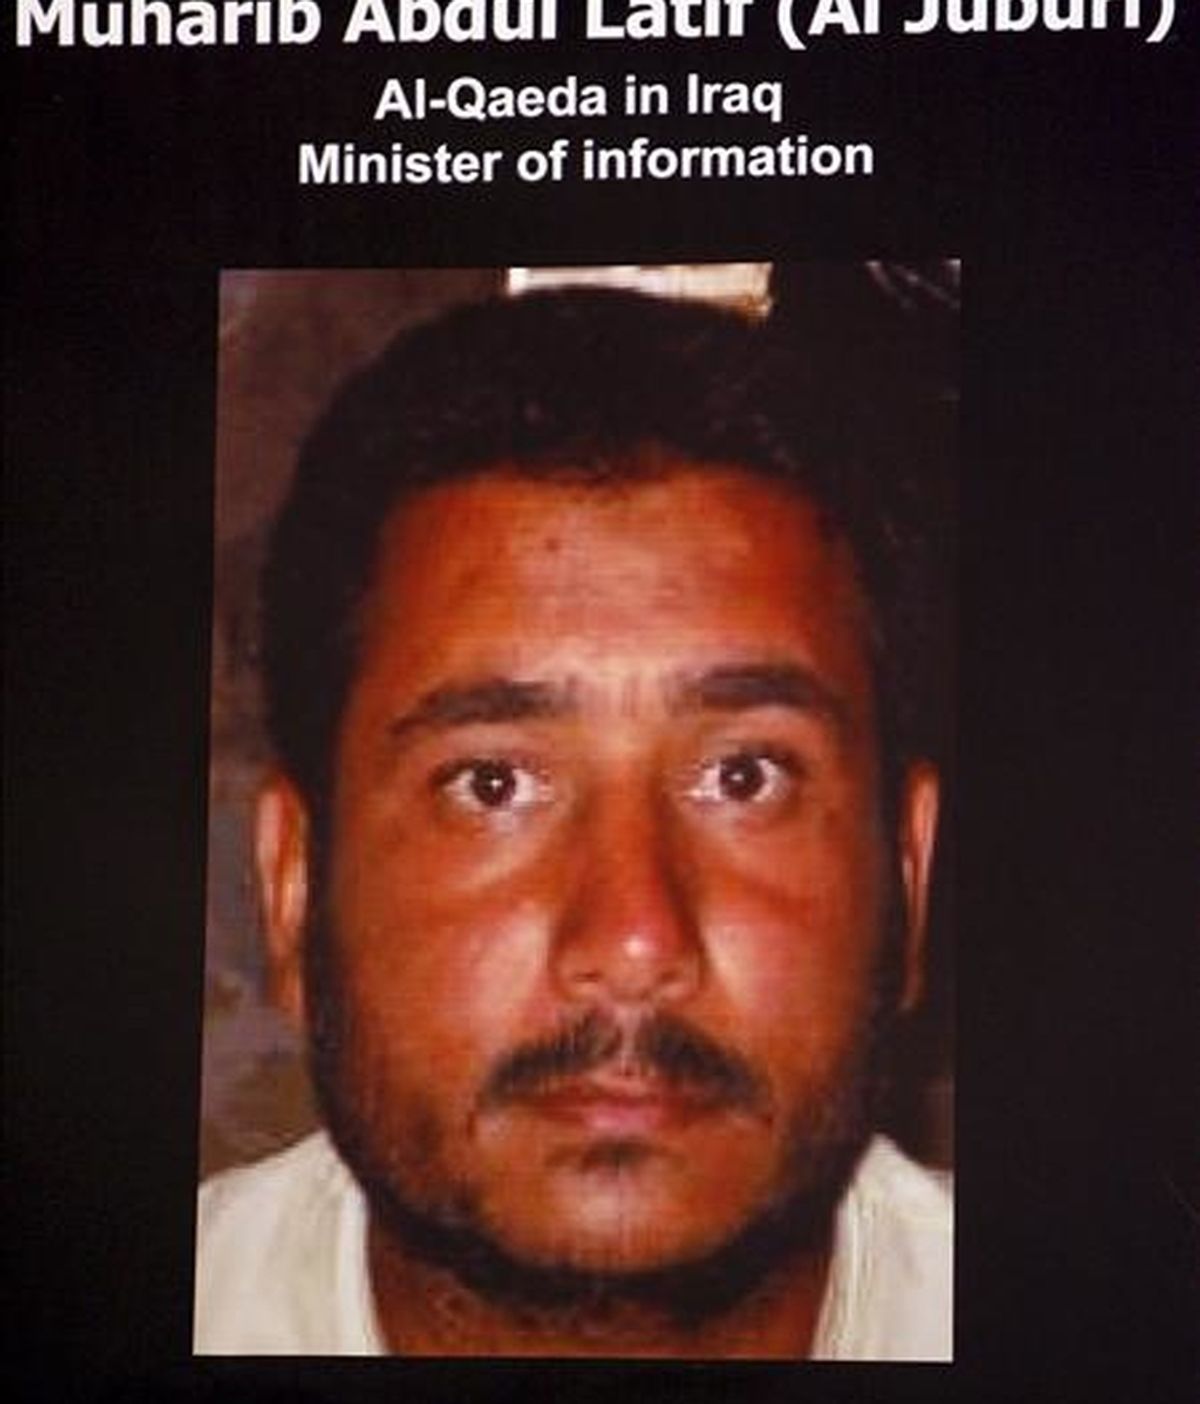 Foto mostrada en mayo de 2007 por el portavoz del ejército de EEUU en Bagdad, William Caldwell, durante una rueda de prensa en Bagdad del "ministro de información" de Al Qaeda en Irak, a quien se identificó como Muharib Abdulatif al-Juburi, también conocido como Abu Omar al-Baghdadi. EFE/Archivo